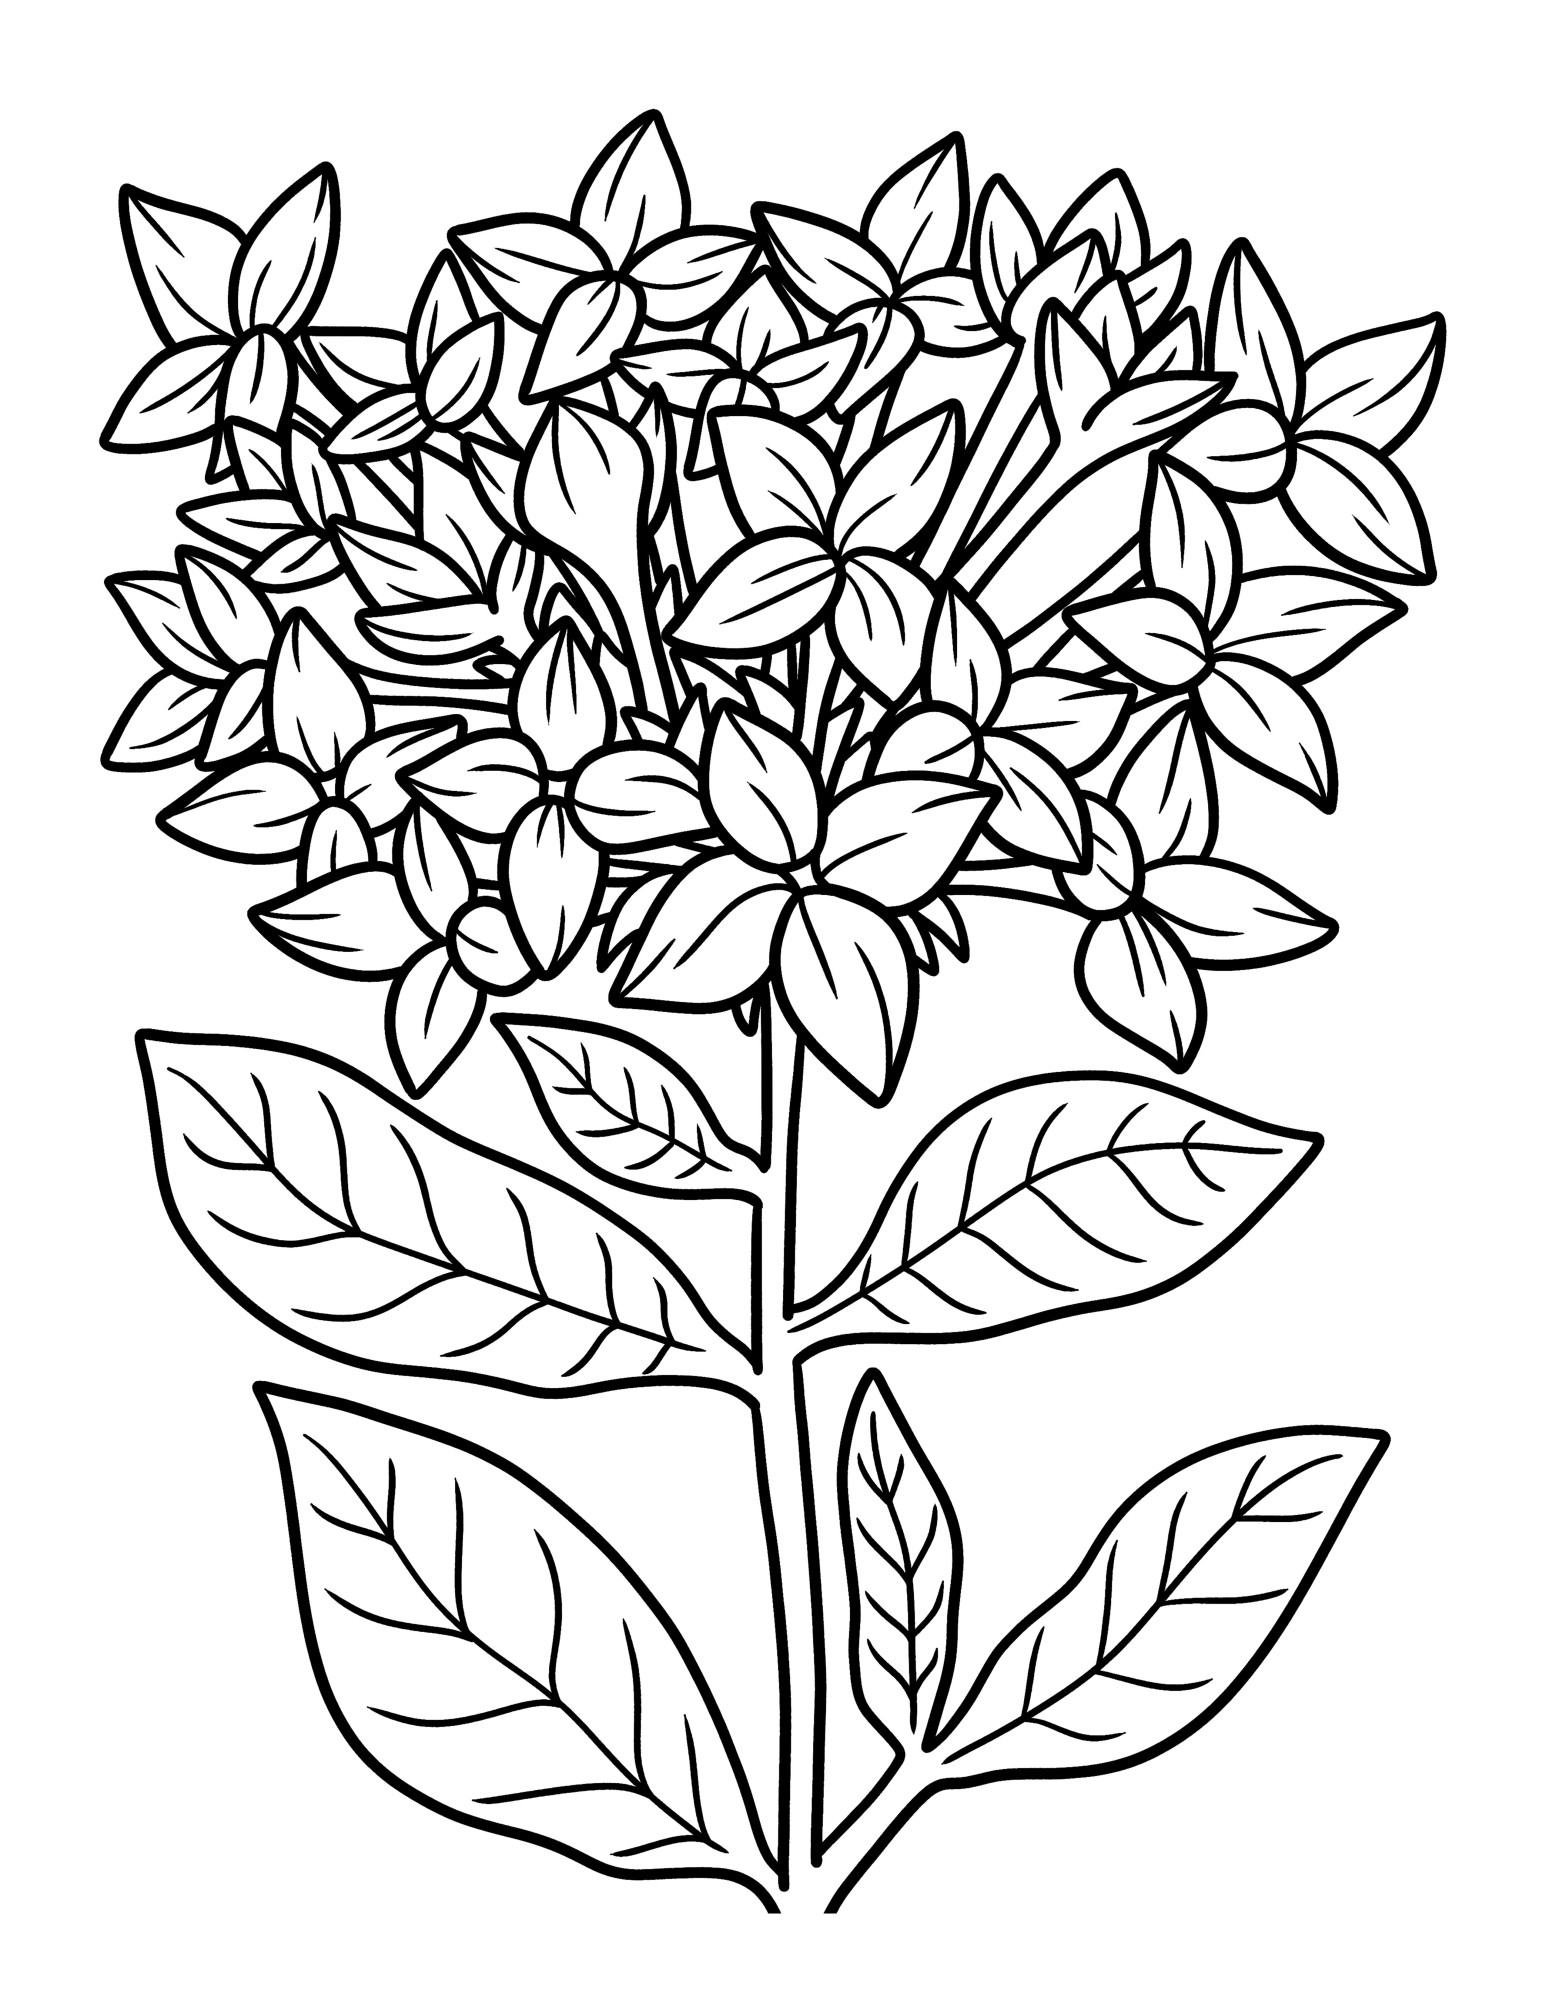 Раскраска для детей: цветок со стеблем